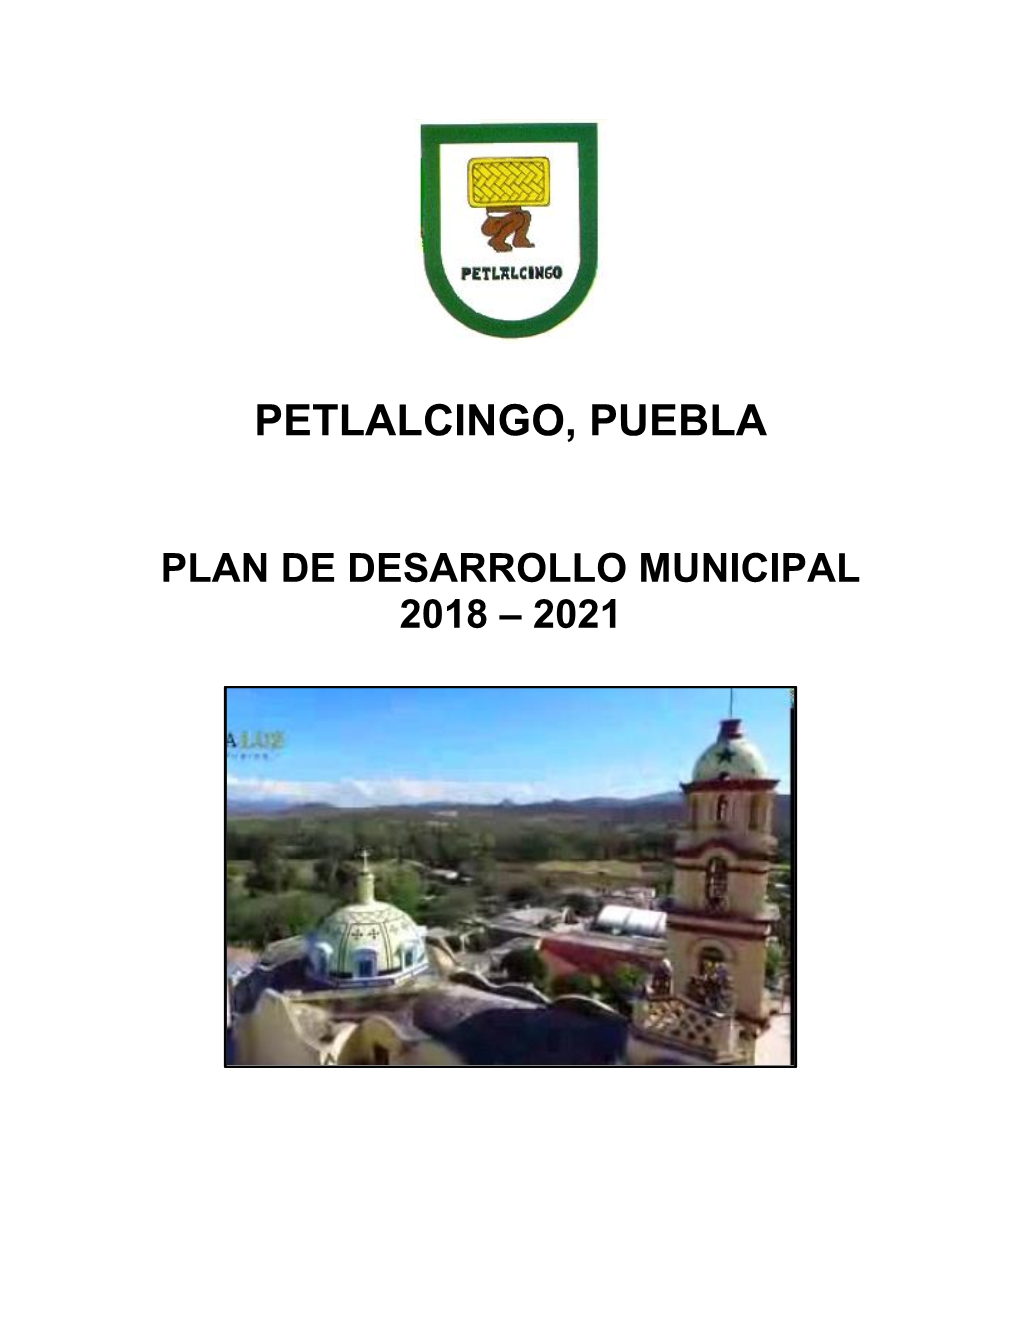 Petlalcingo, Puebla